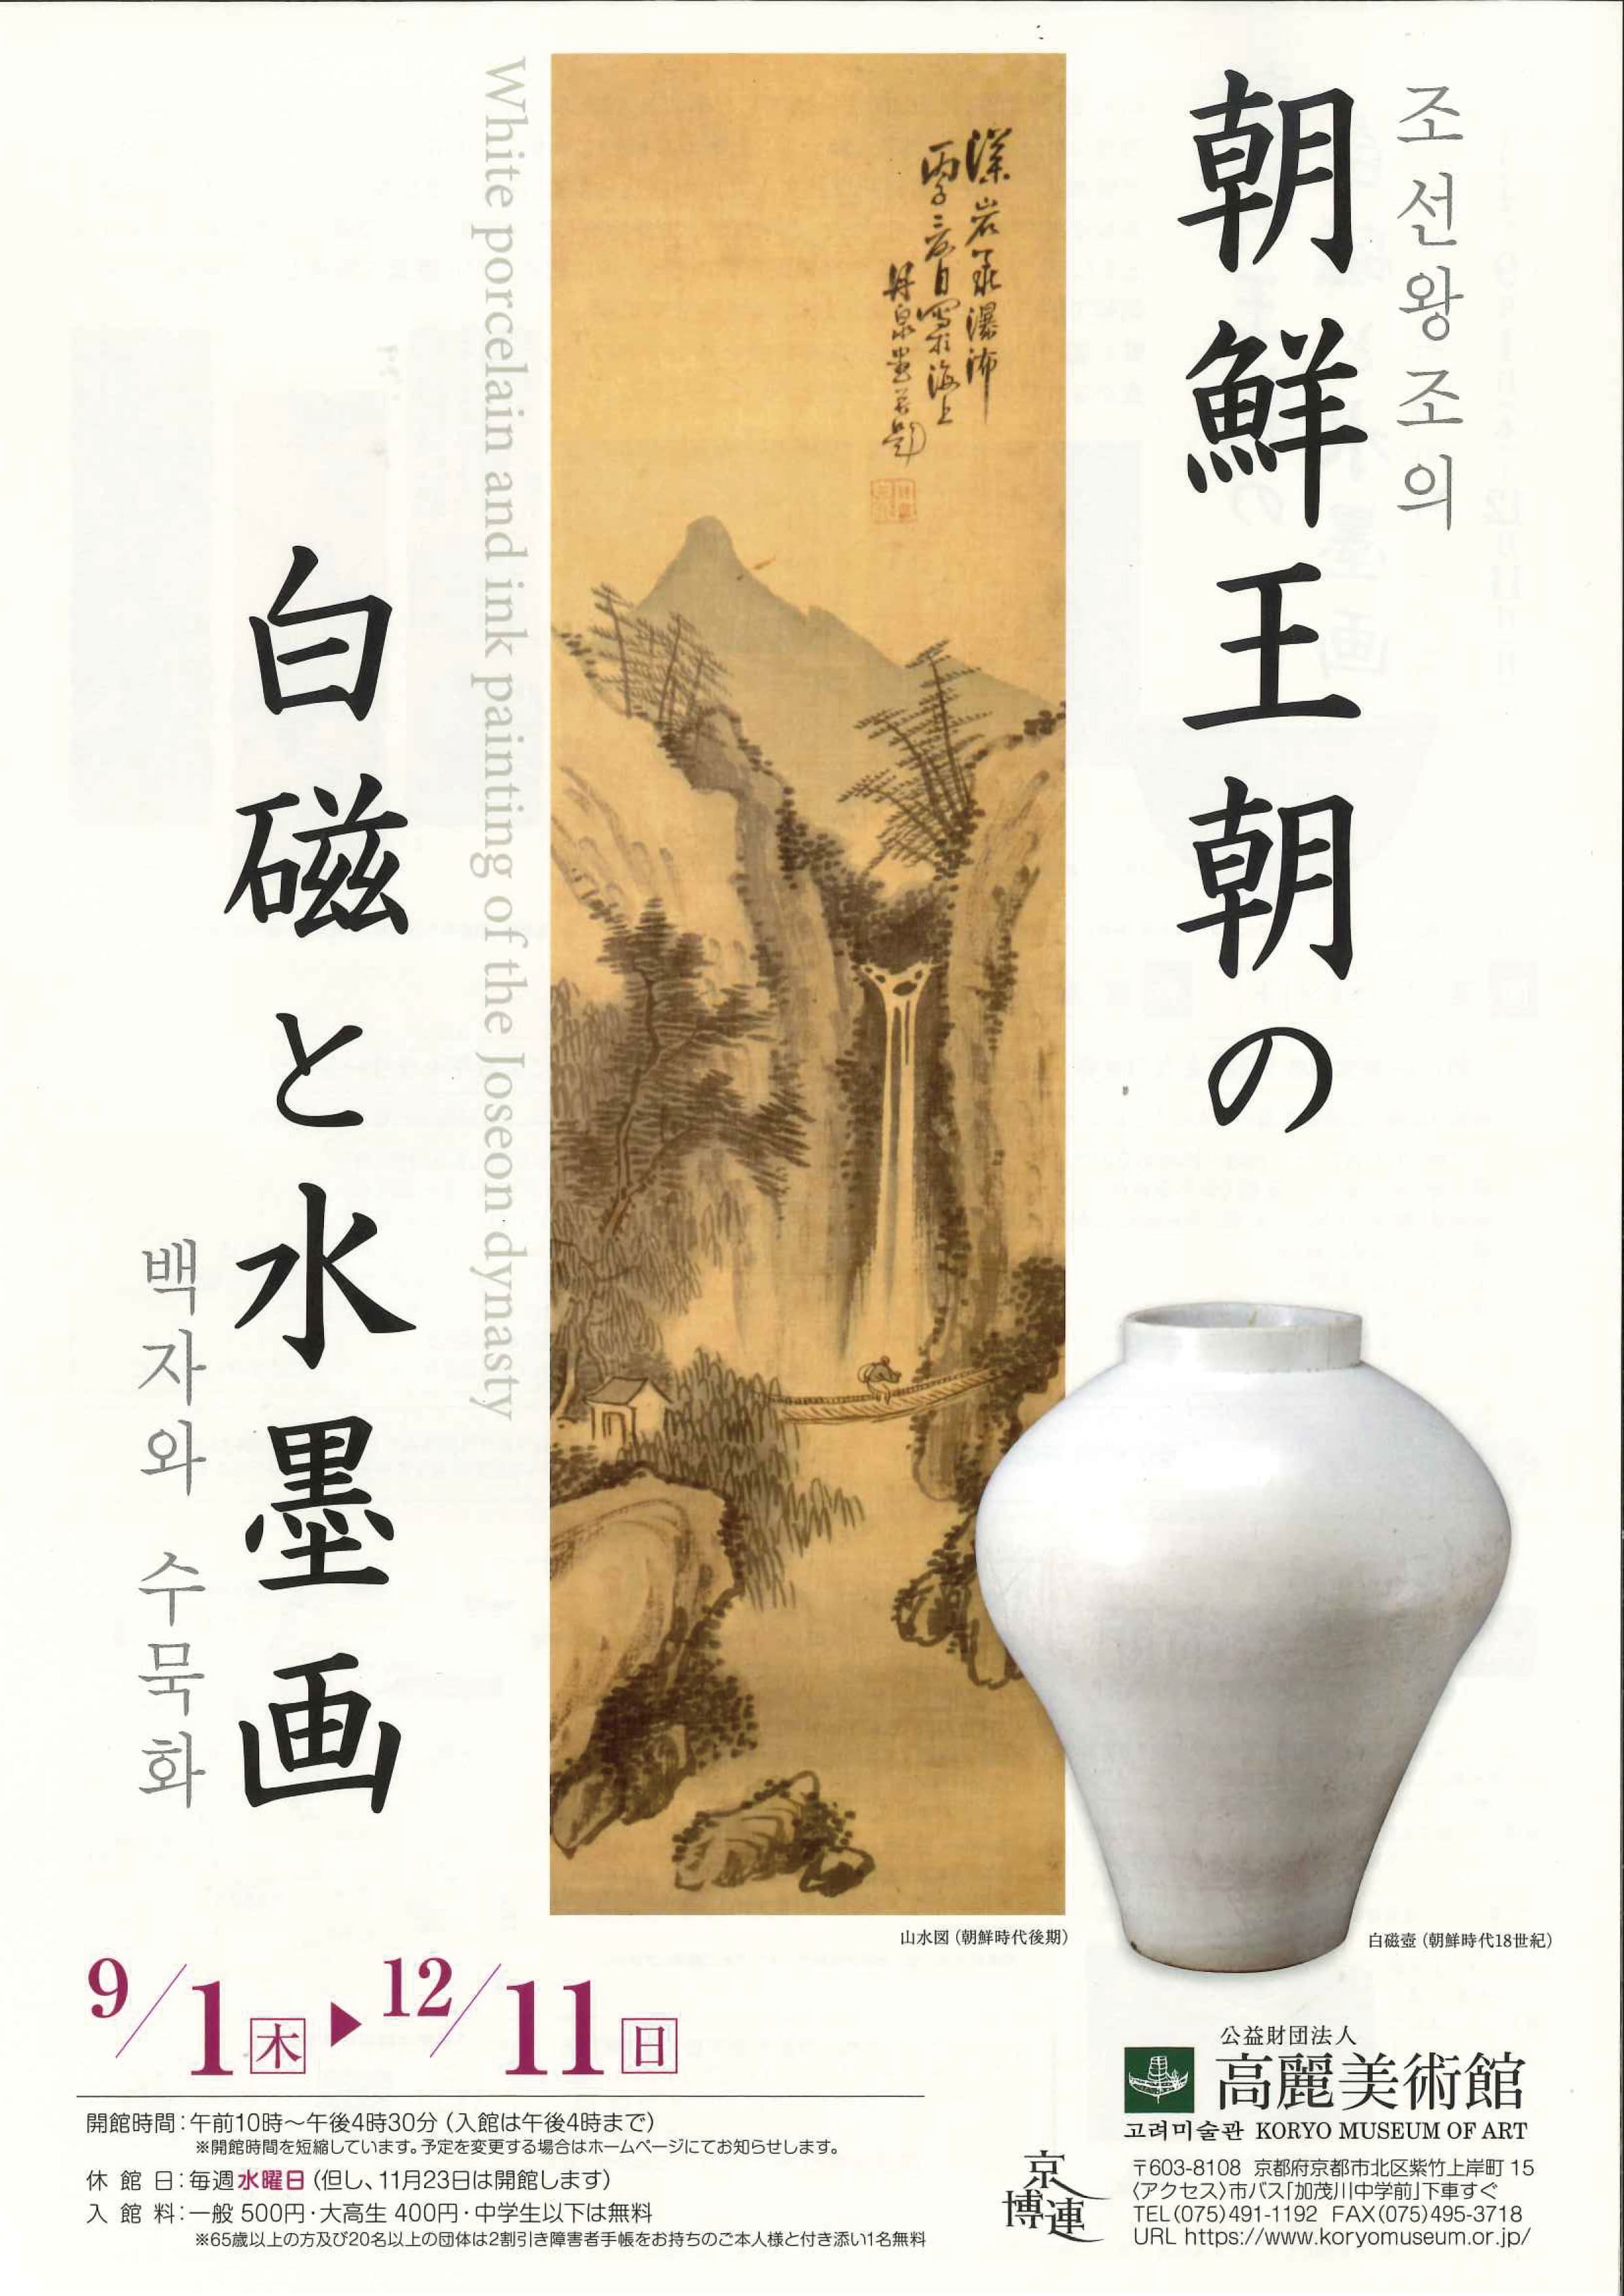 『朝鮮王朝の白磁と水墨画 』展<font color=#f0000>　　～９月１日より開催～</font>　